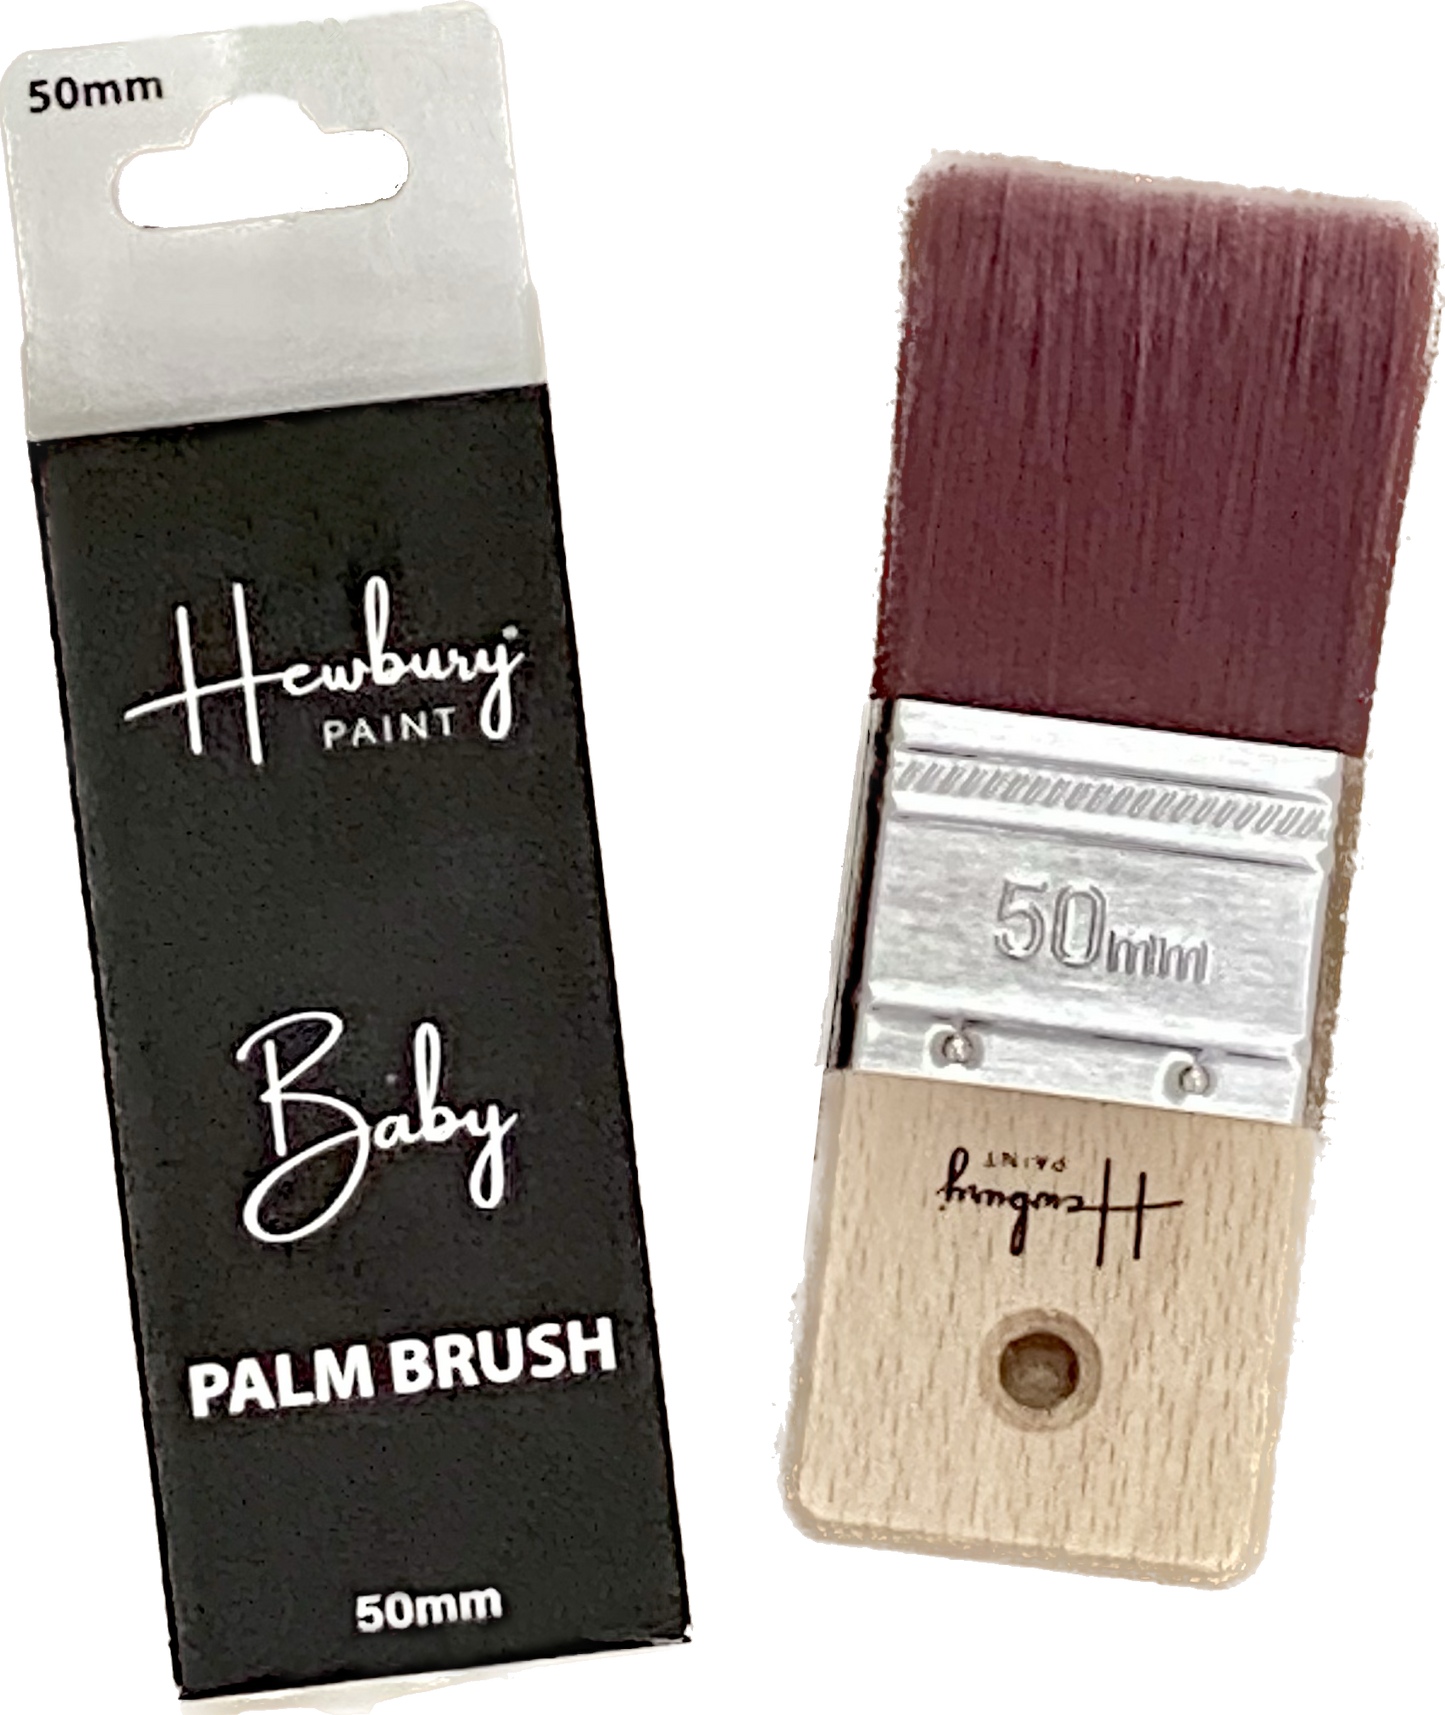 Hewbury Paint® - PALM BRUSH